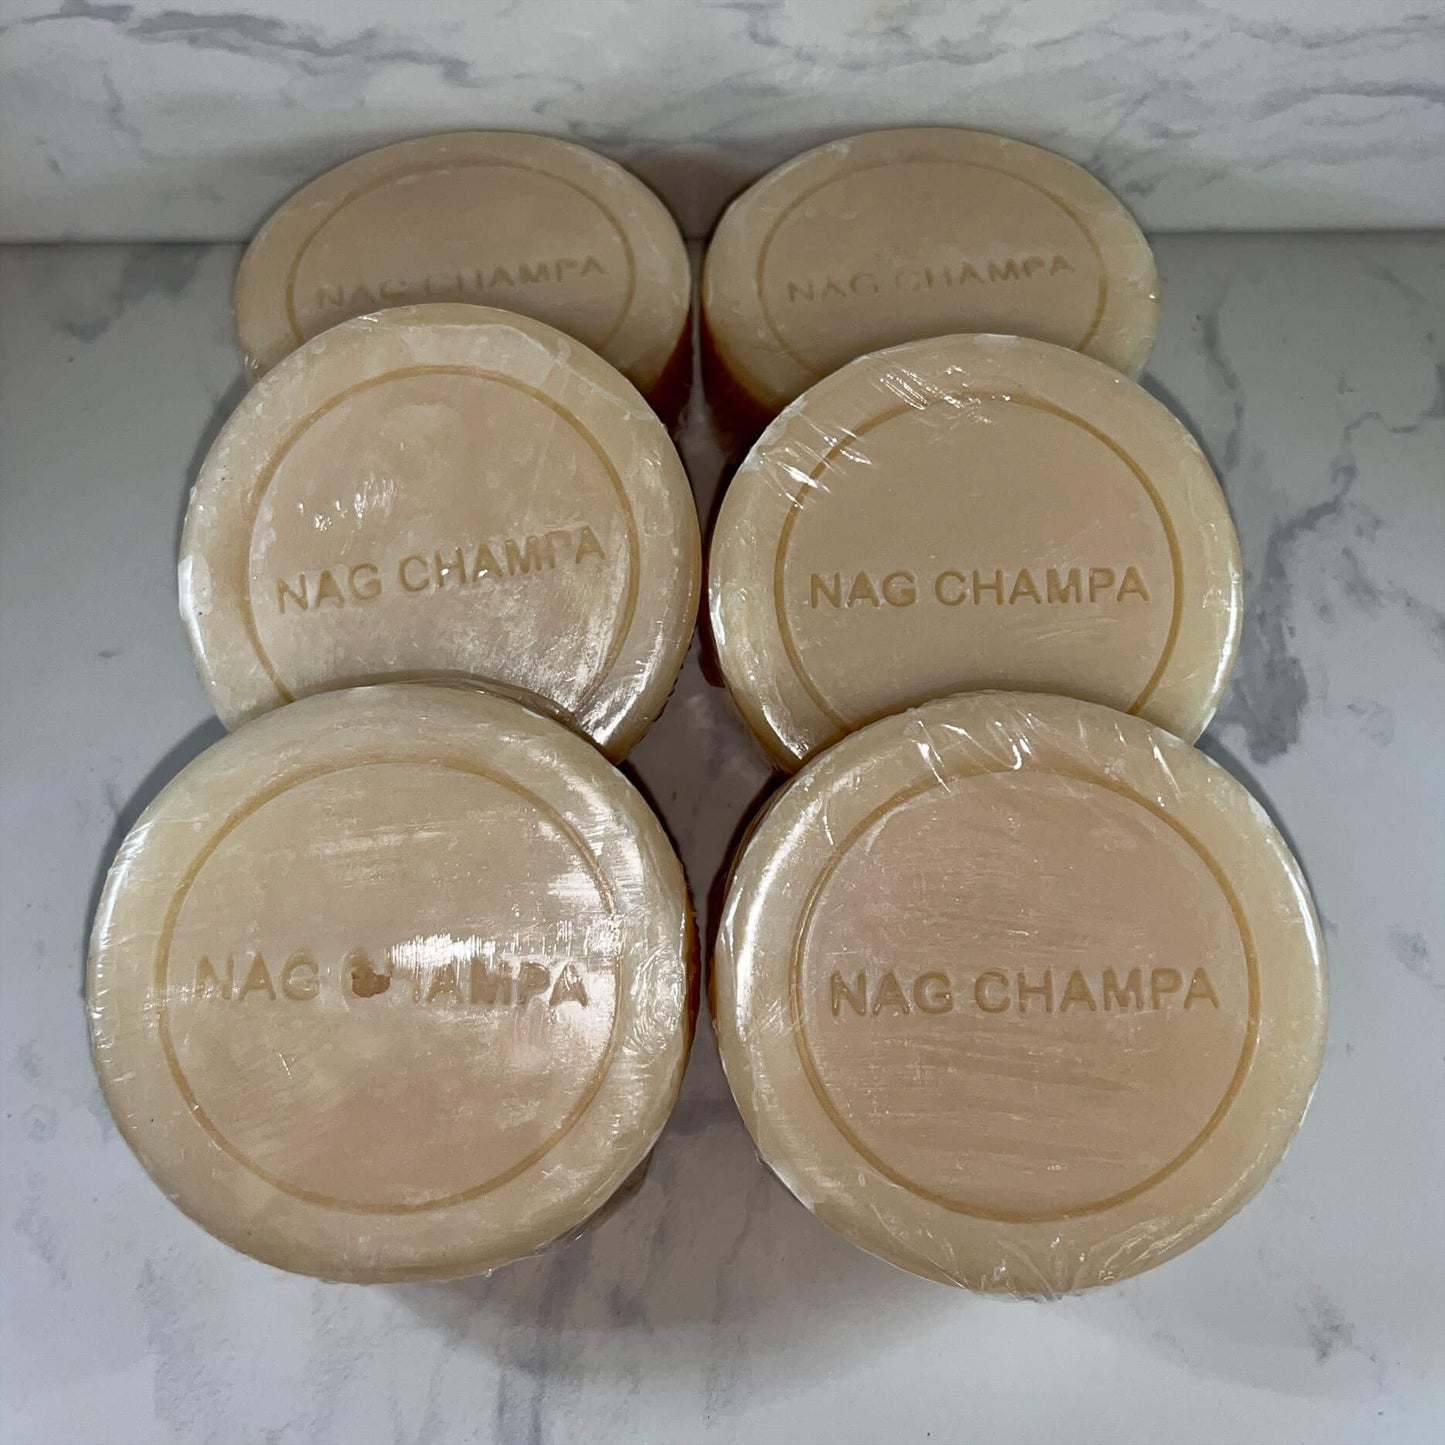 Nag Champa soap 100g